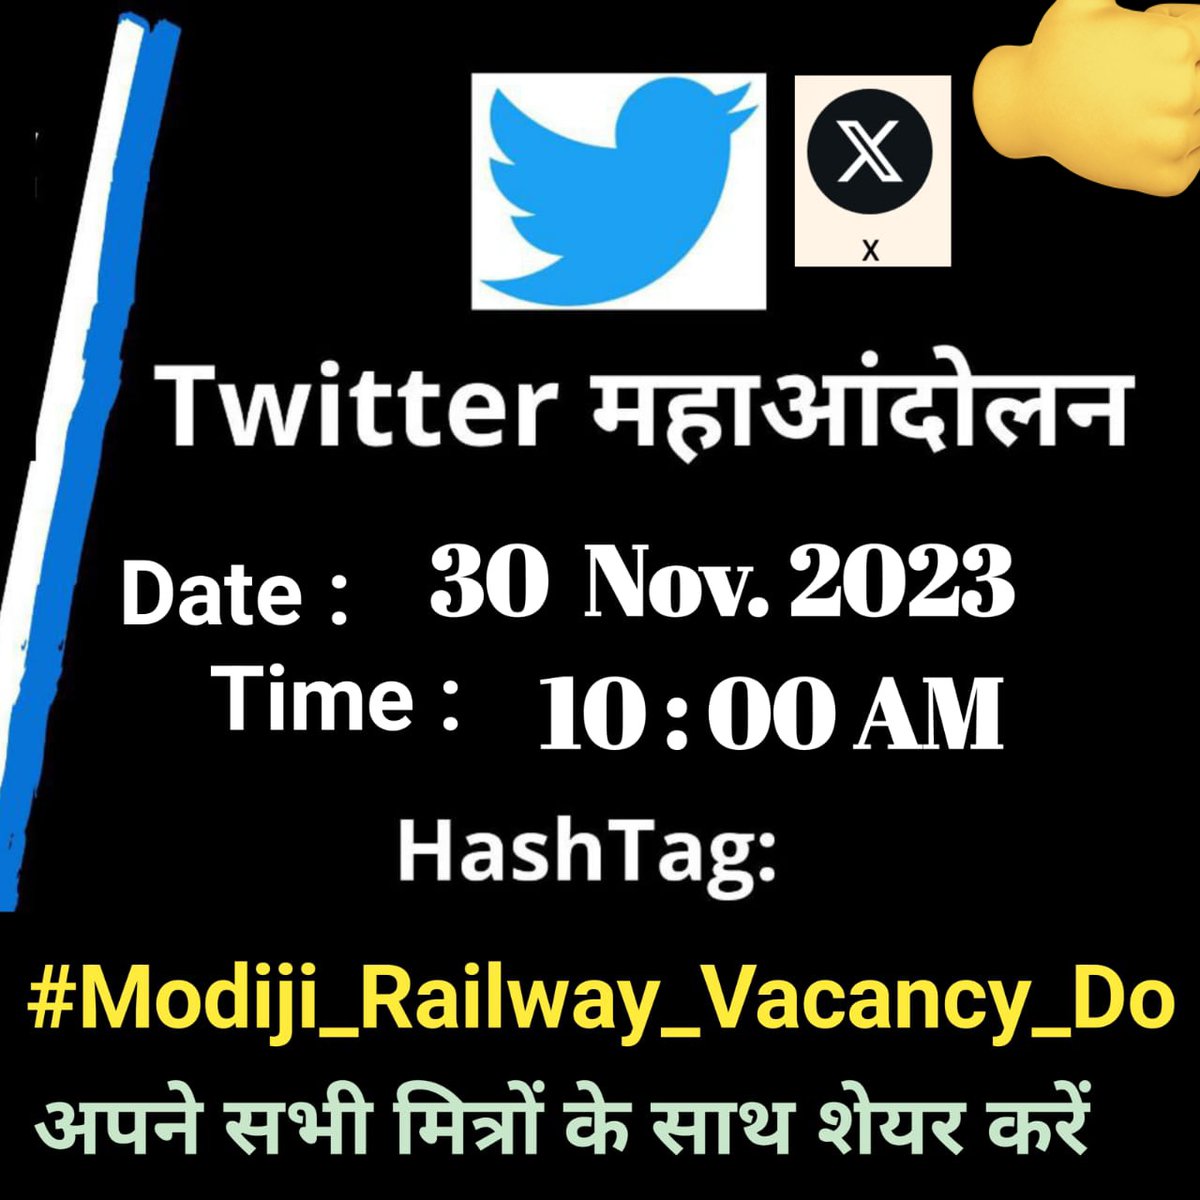 पढ़ने के लिए रात-रात भर जाग रहे है, नौकरी की चाह में हर रोज भाग रहे है, बेरोजगारी का दर्द उनसे पूछों यारों जो युवा बूढ़े माँ-बाप से पैसा मांग रहे है। #Modiji_Railway_Vacancy_Do